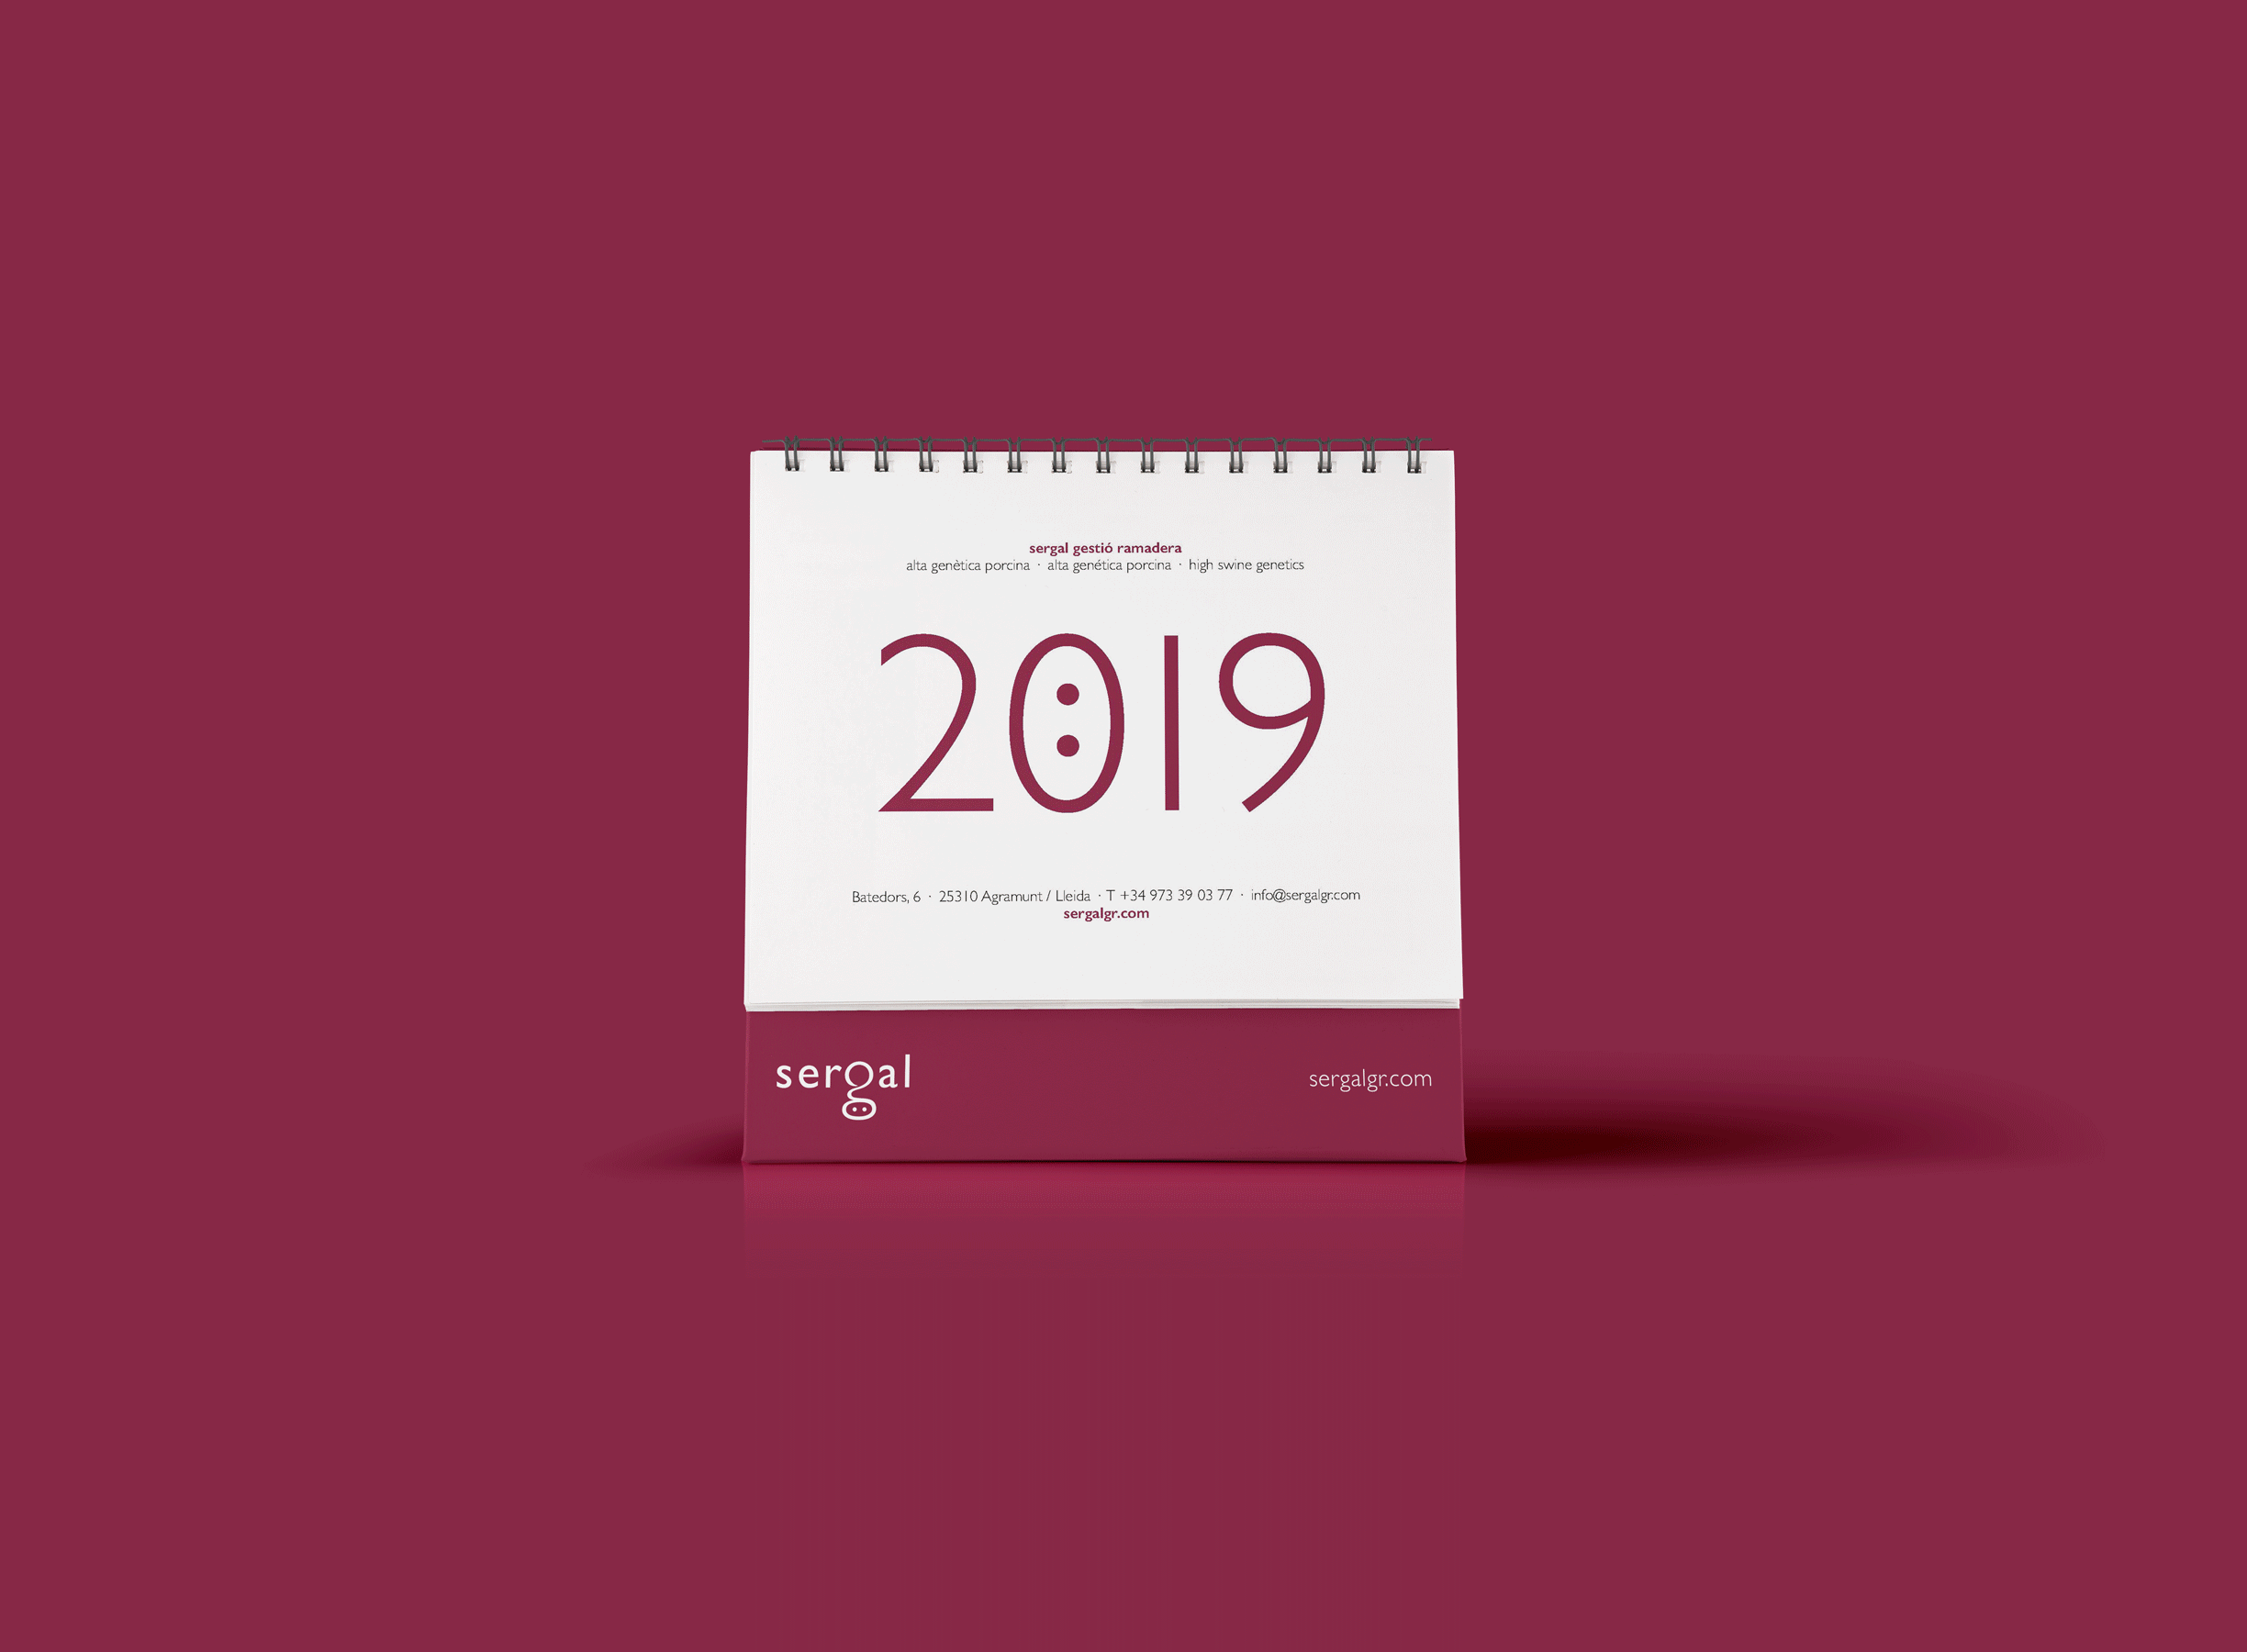 Después de la buena acogida de la edición anterior, para empezar a preparar el año nuevo y tenernos bien cerca, ¡os presentamos el nuevo calendario Sergal 2019!